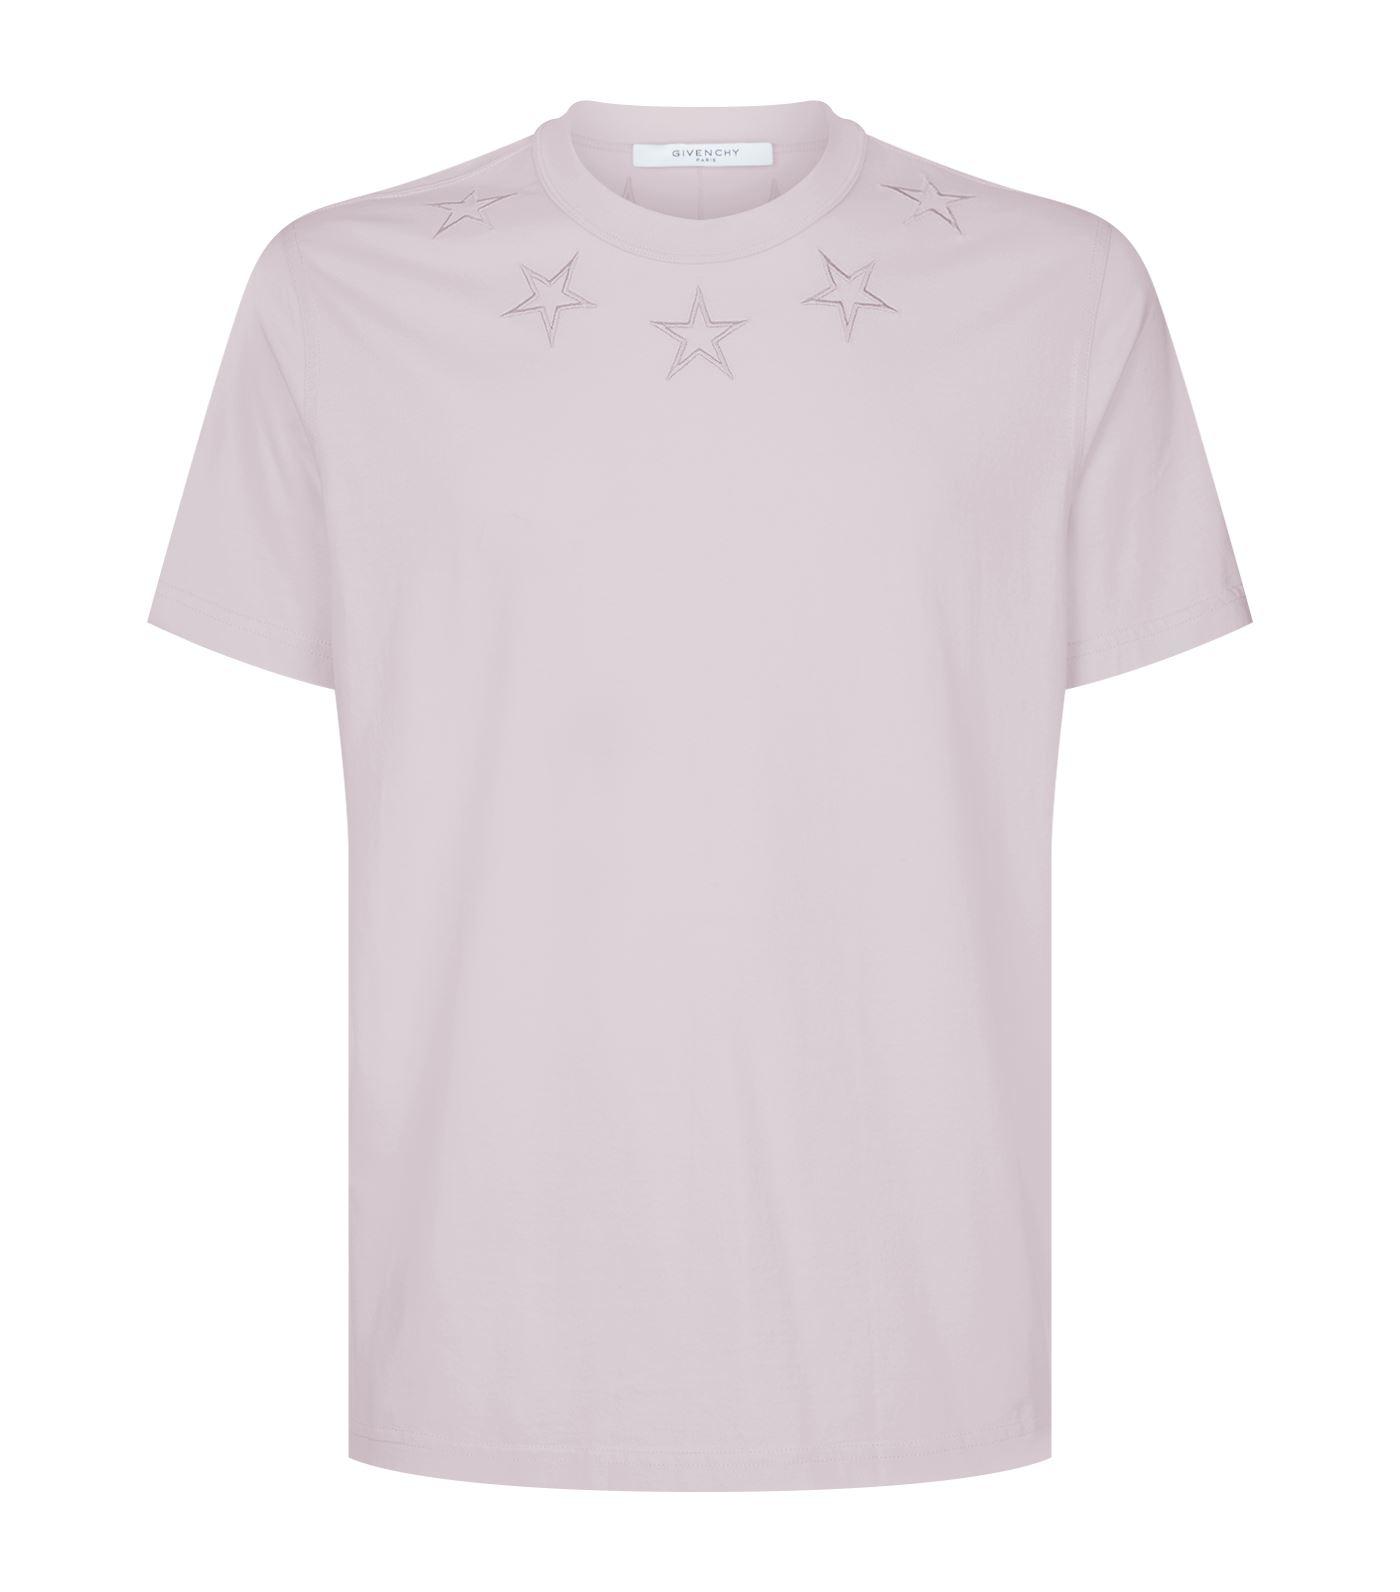 givenchy shirt pink